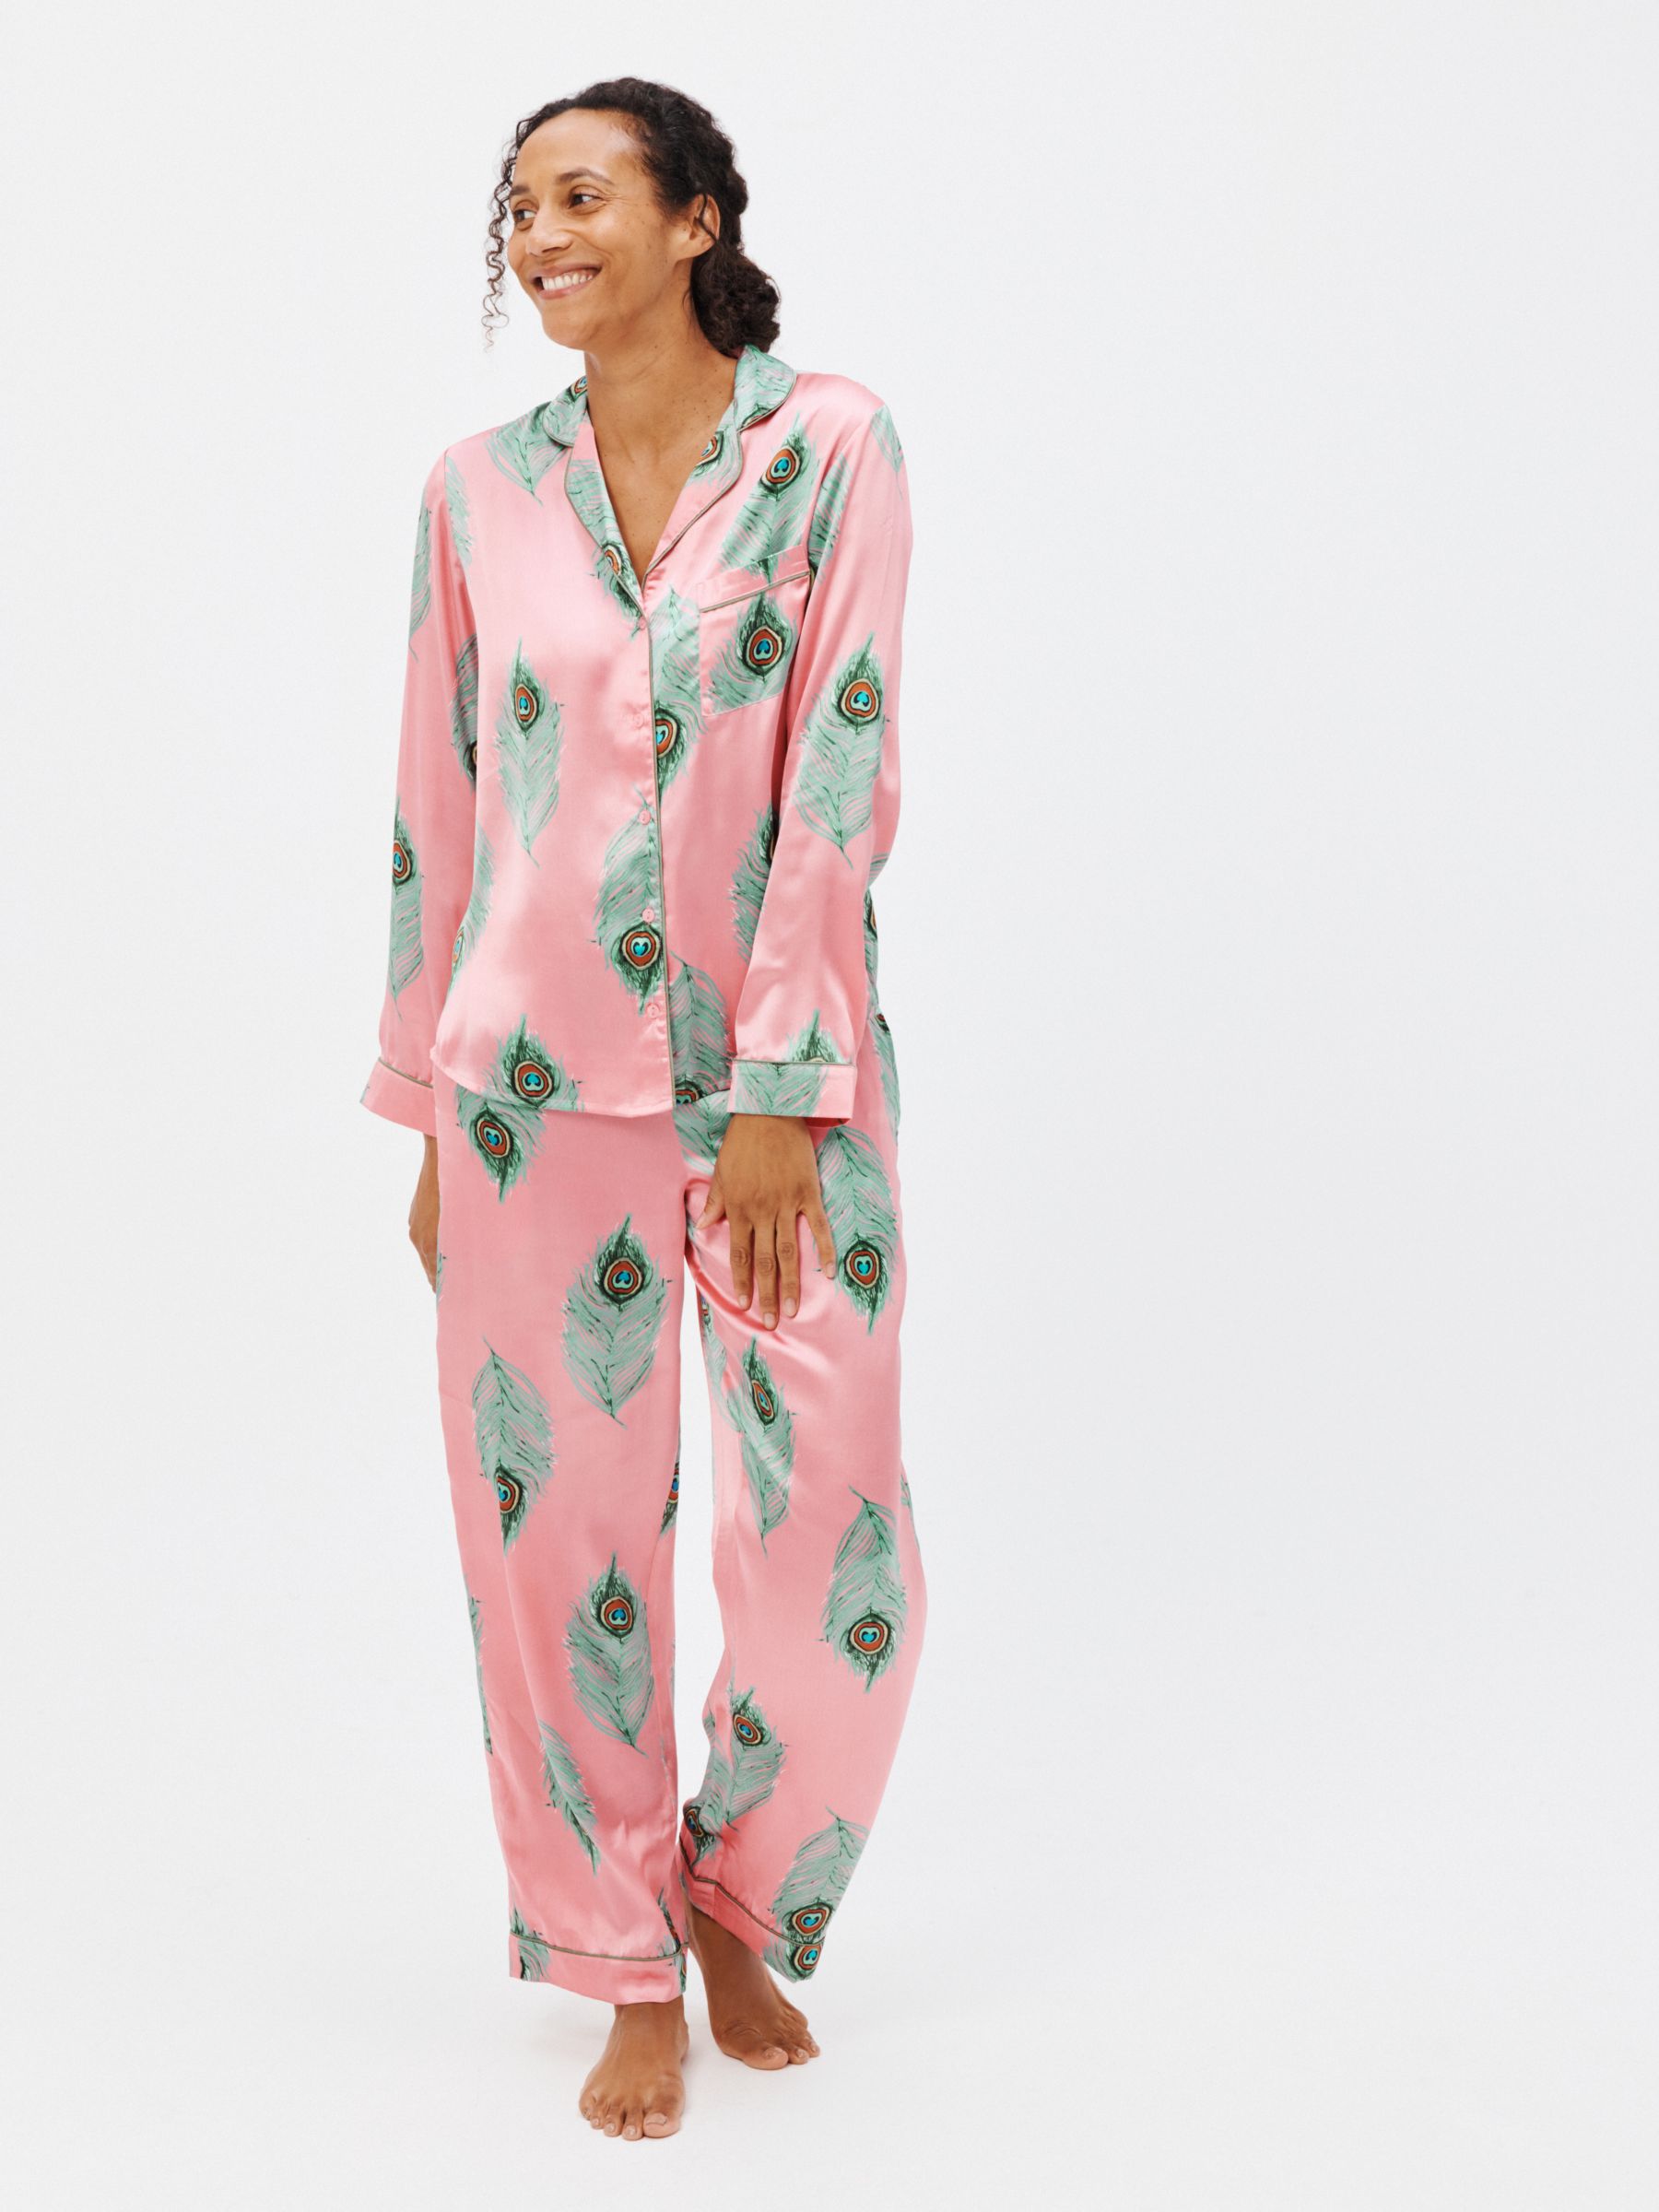 Truly Cami Silk Satin Pyjamas, Midnight at John Lewis & Partners